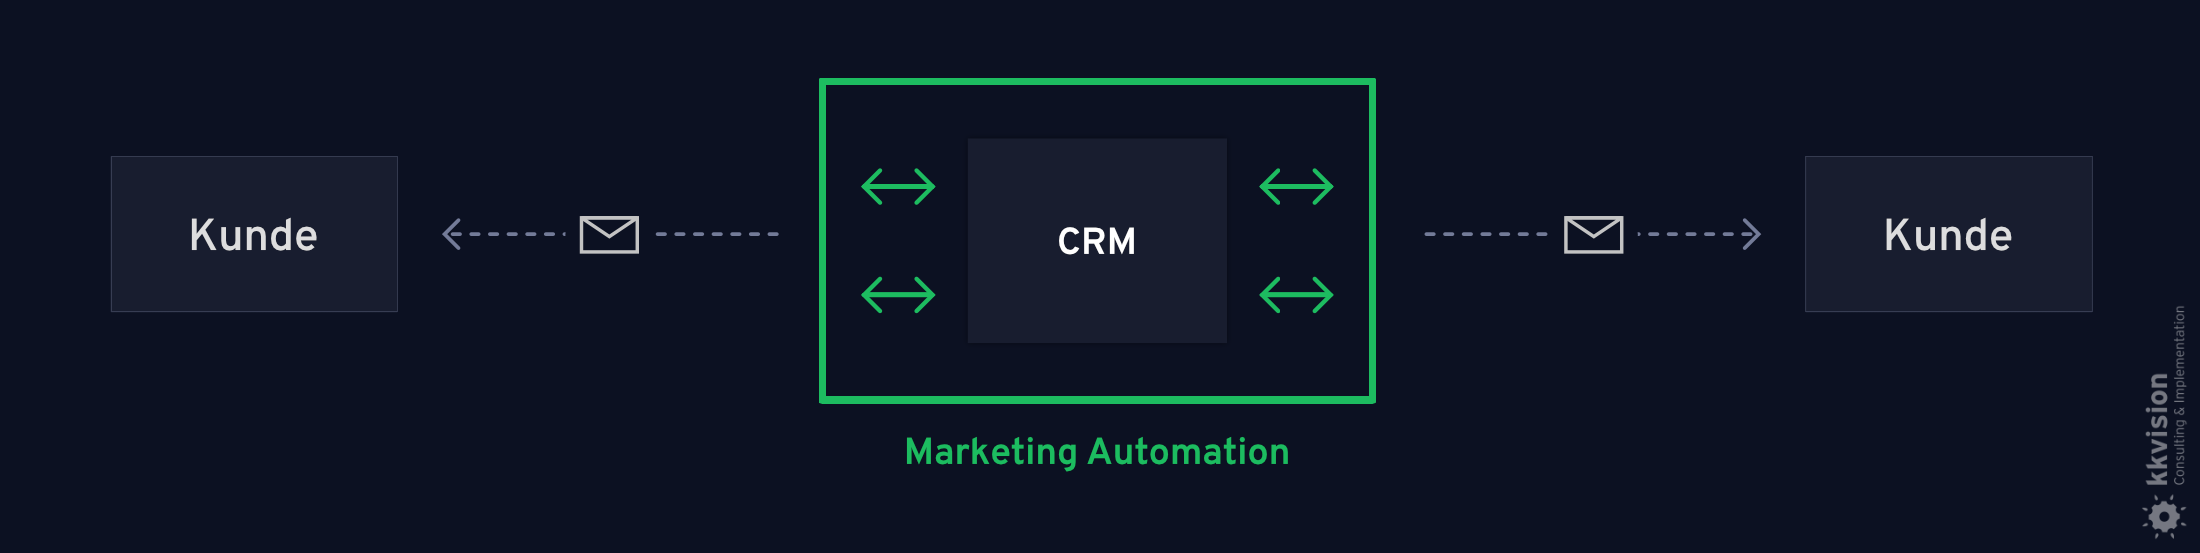 CRM & Marketing Automation_Kundendaten pflegen